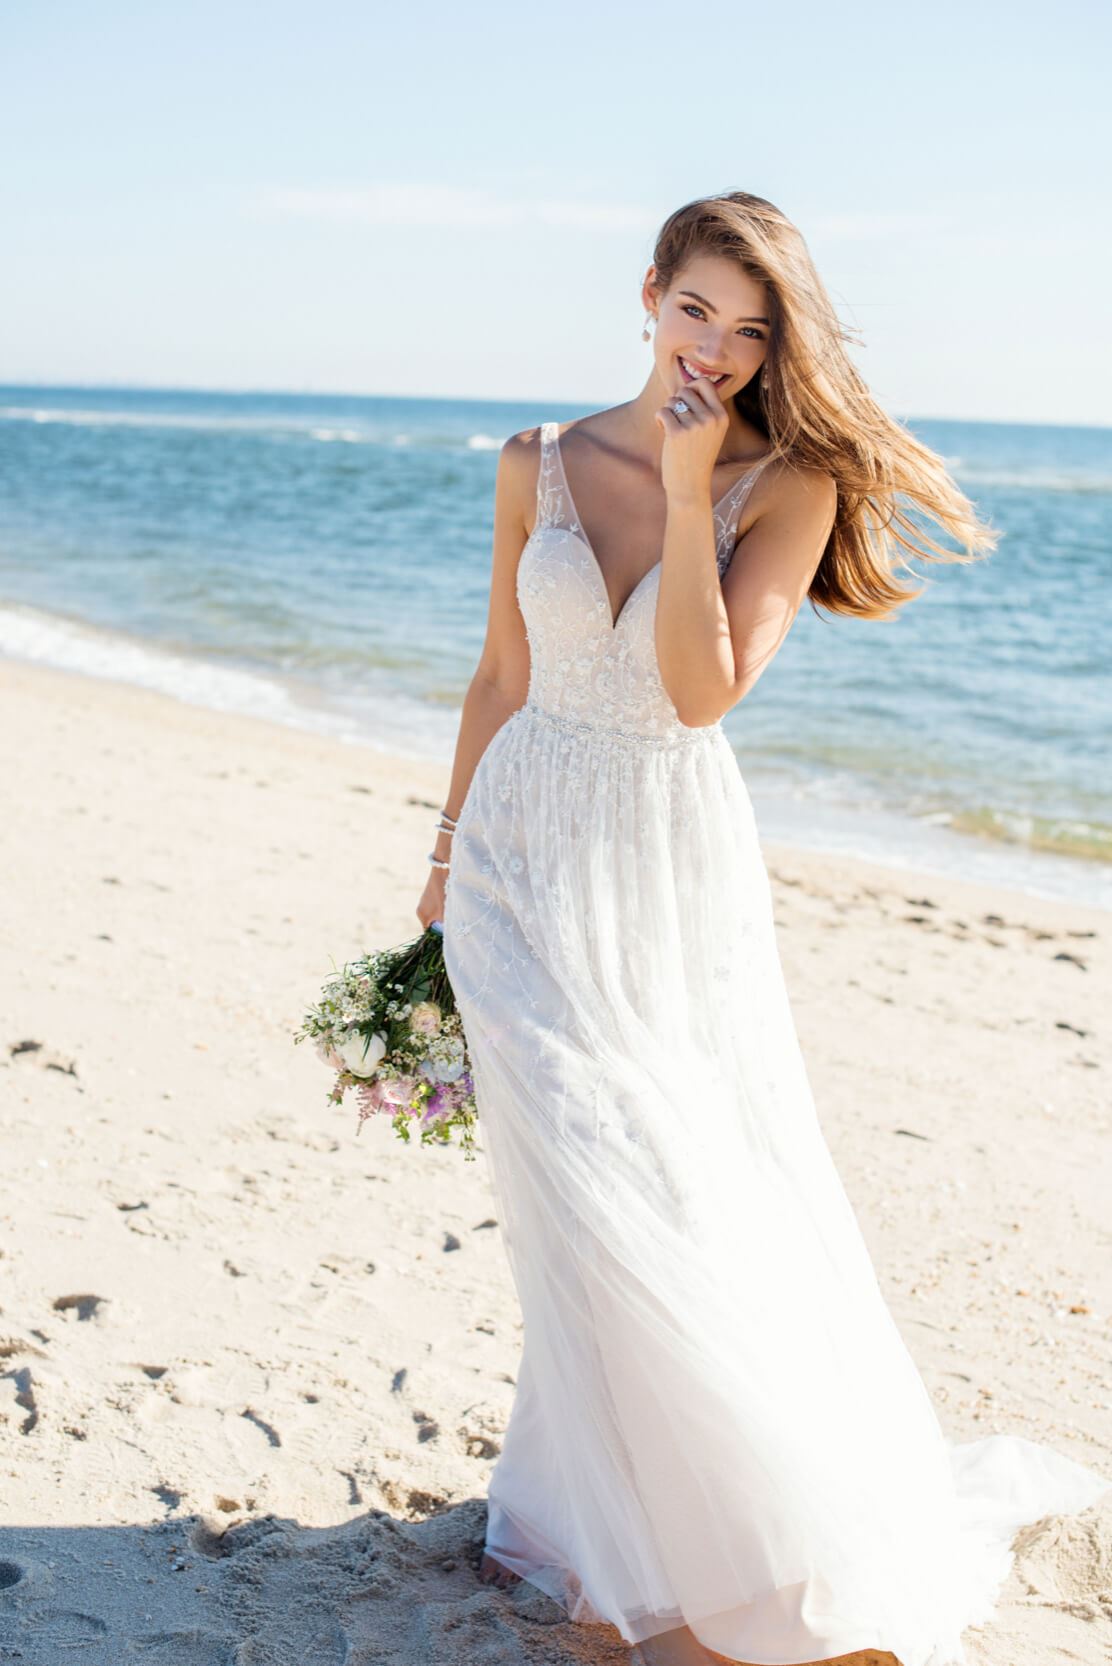 Brunette bride wearing flowy wedding dress on the beach